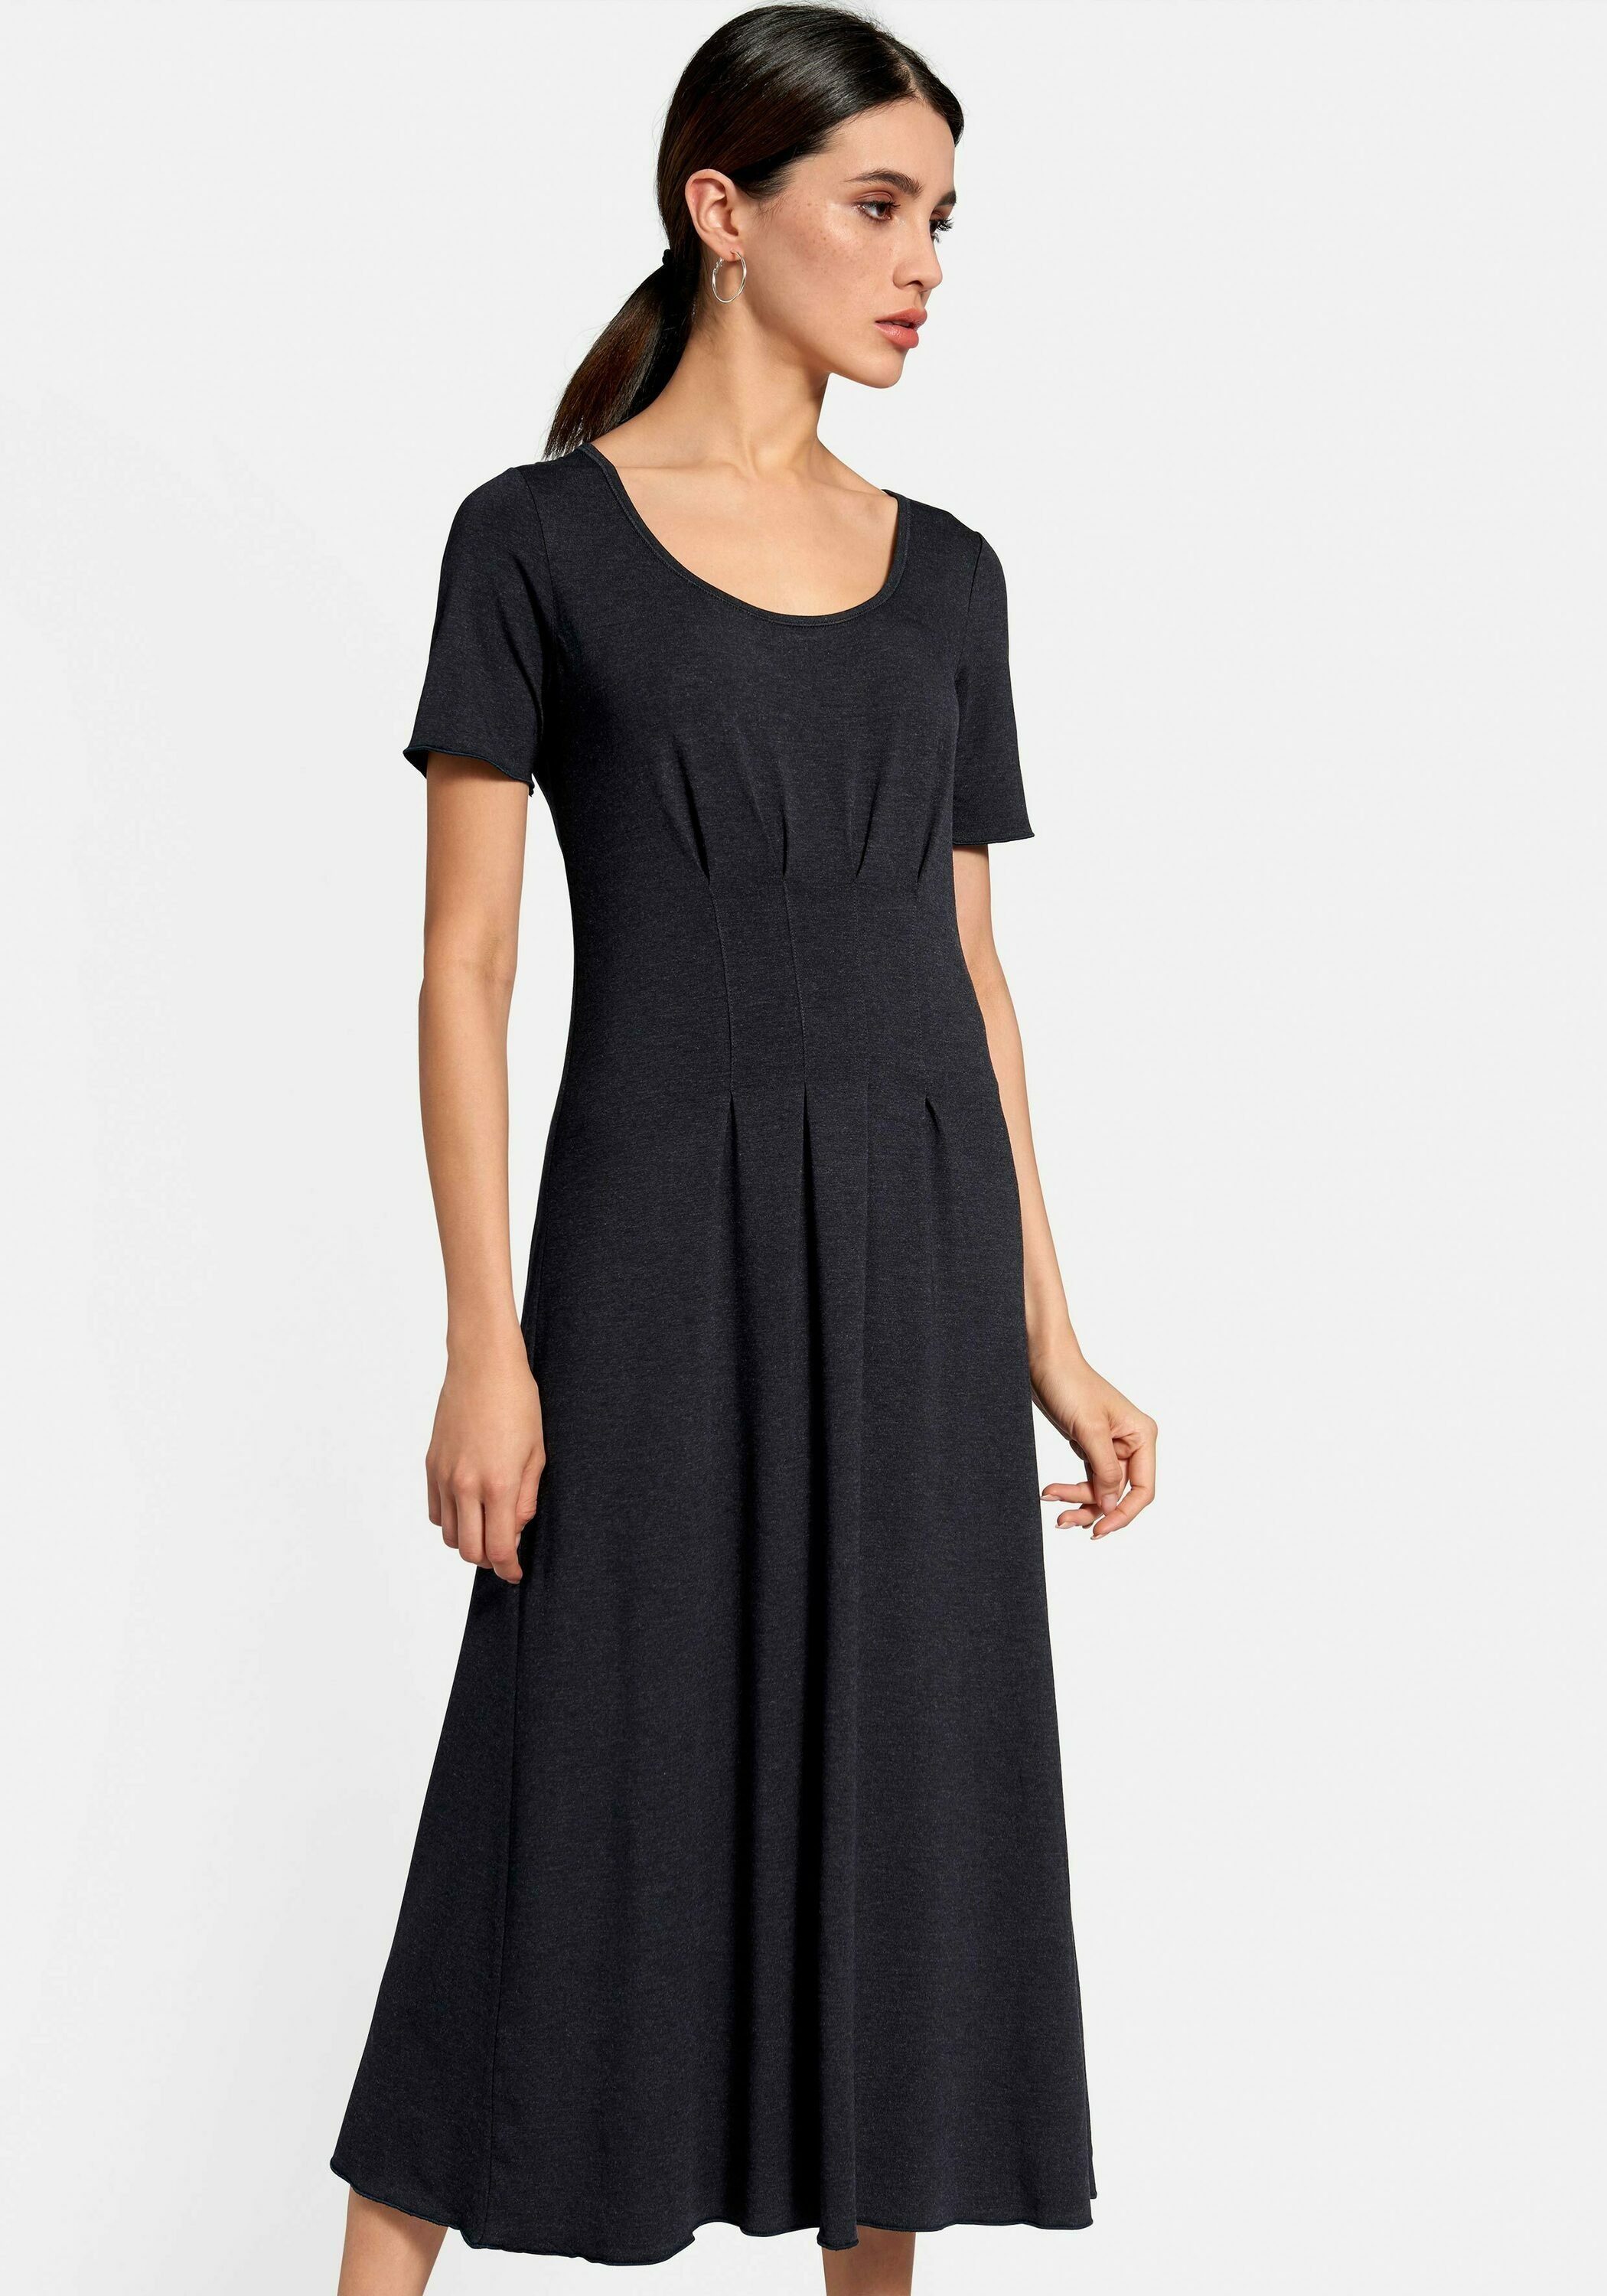 Peter Hahn Jerseykleid »Dress« online kaufen | OTTO